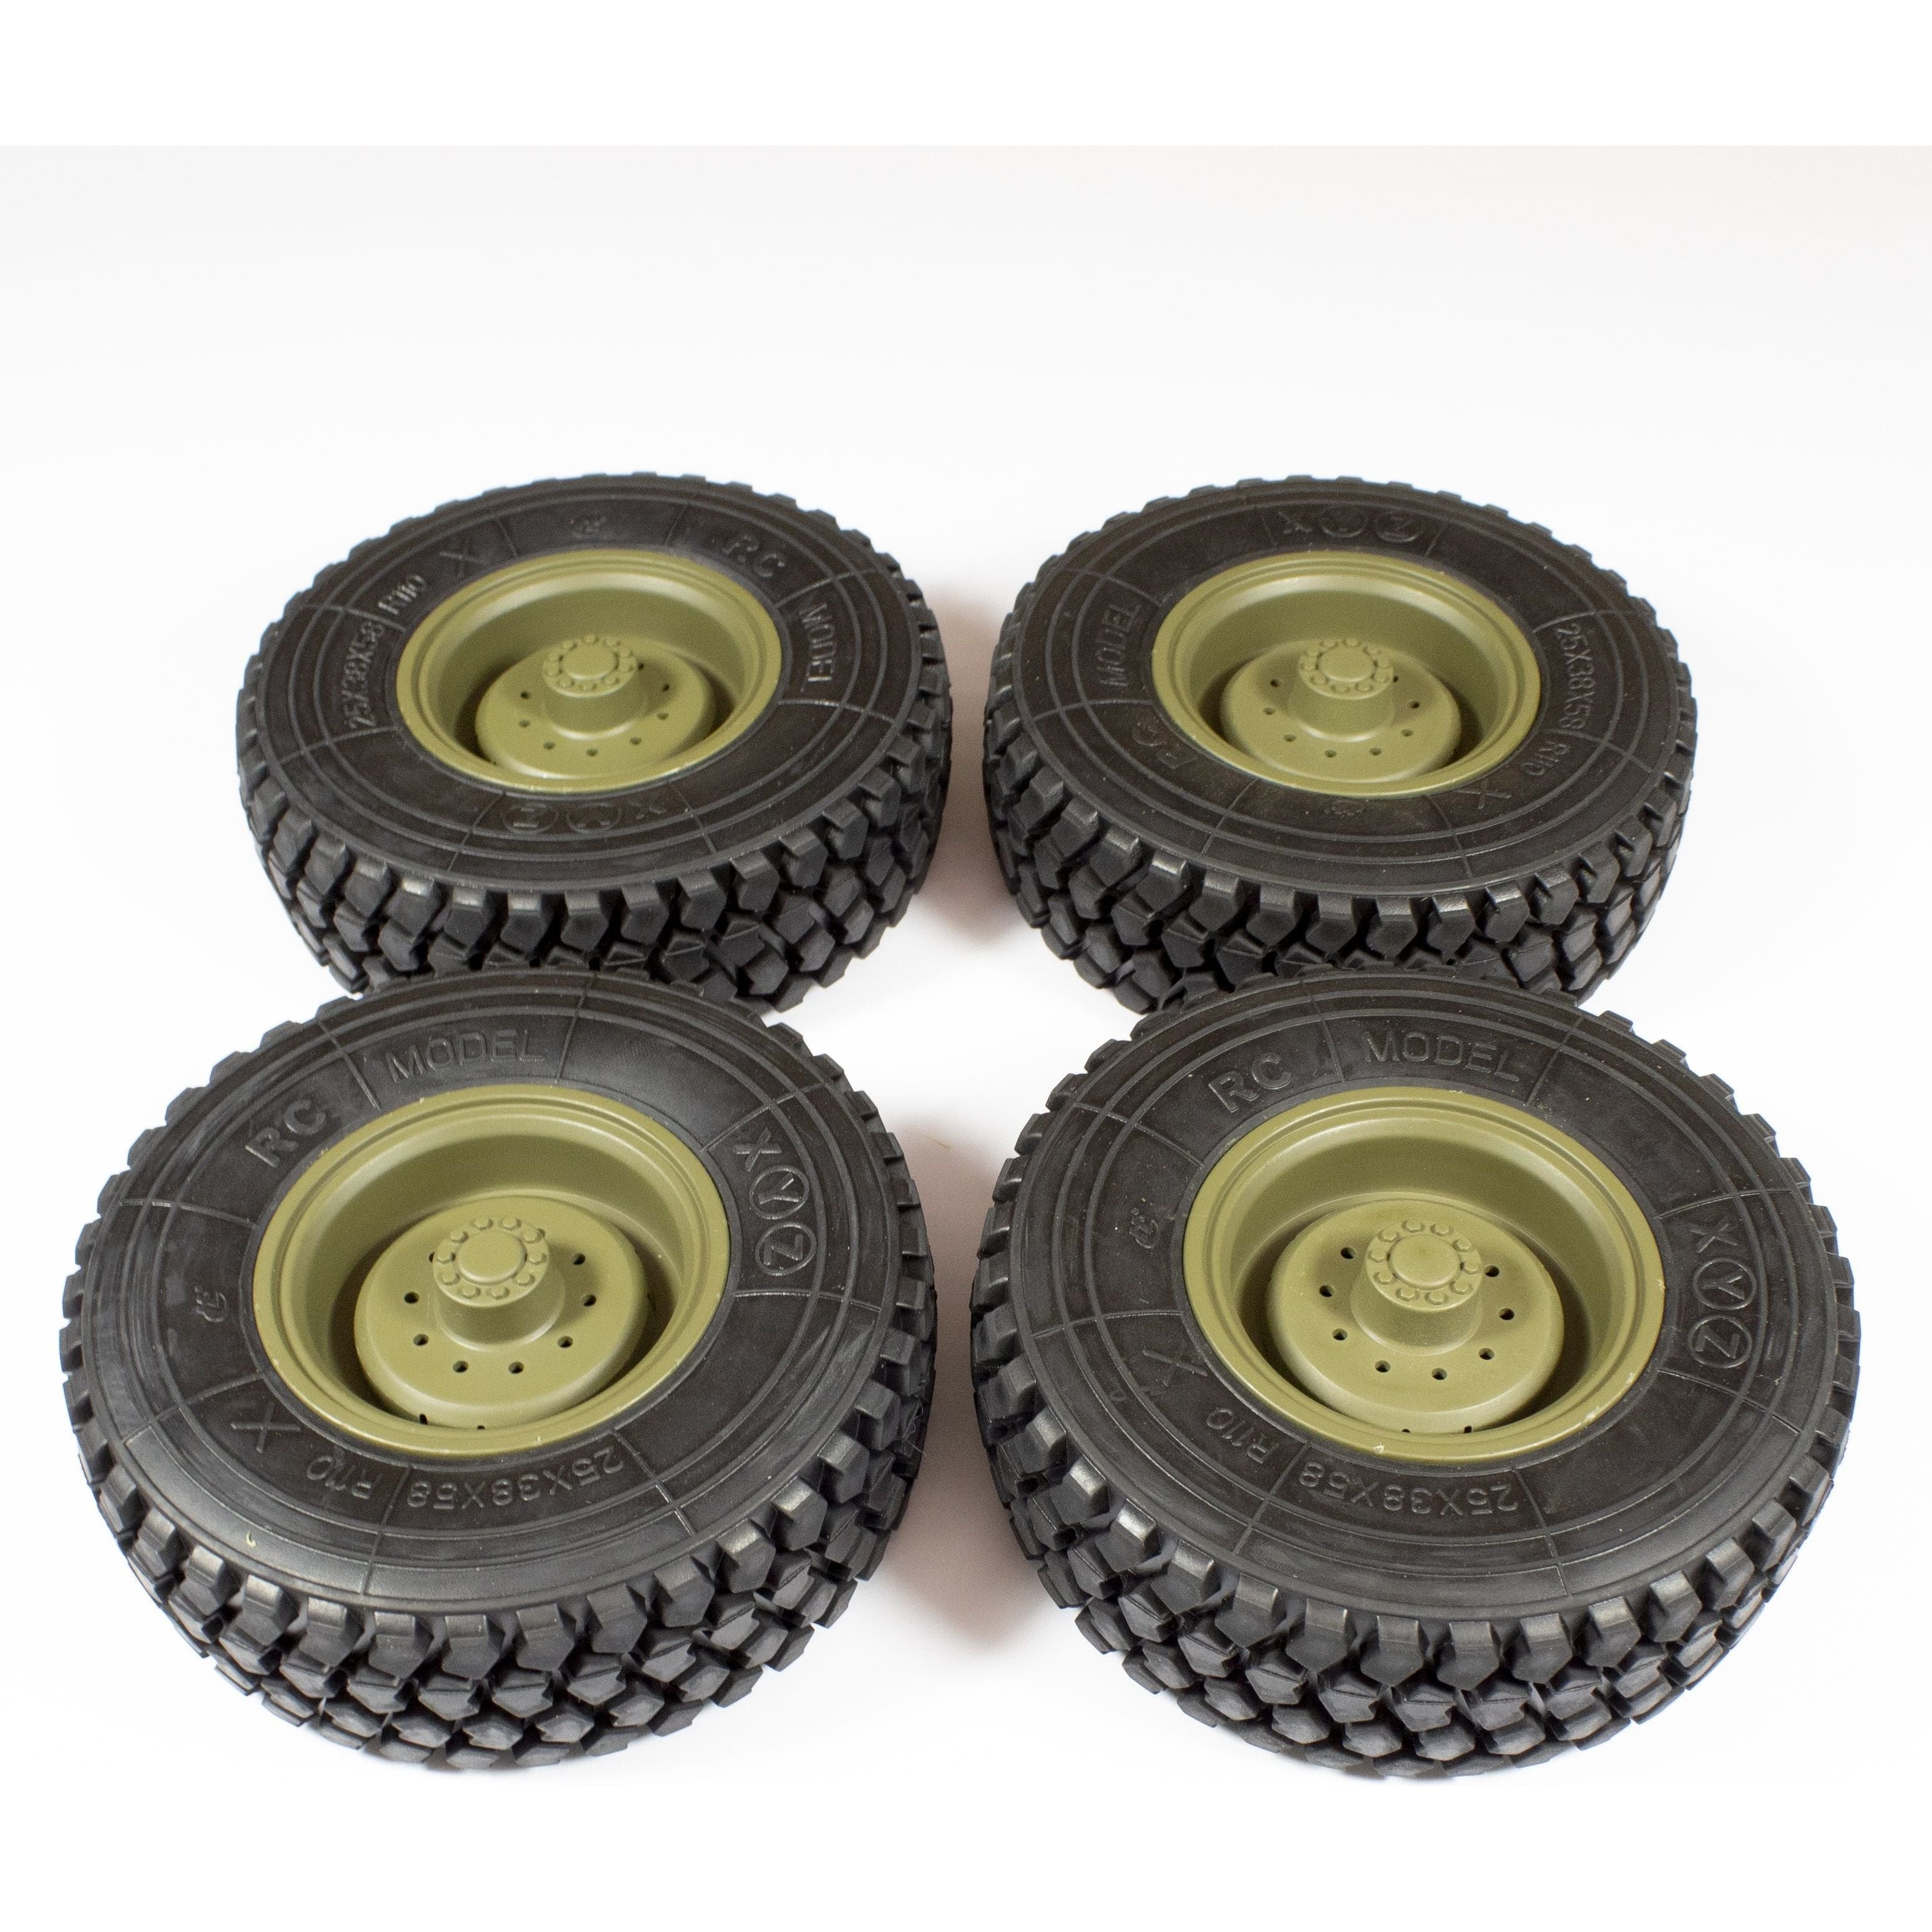 HEMTT Replacement Tires - 12mm Hex (Green/Tan)